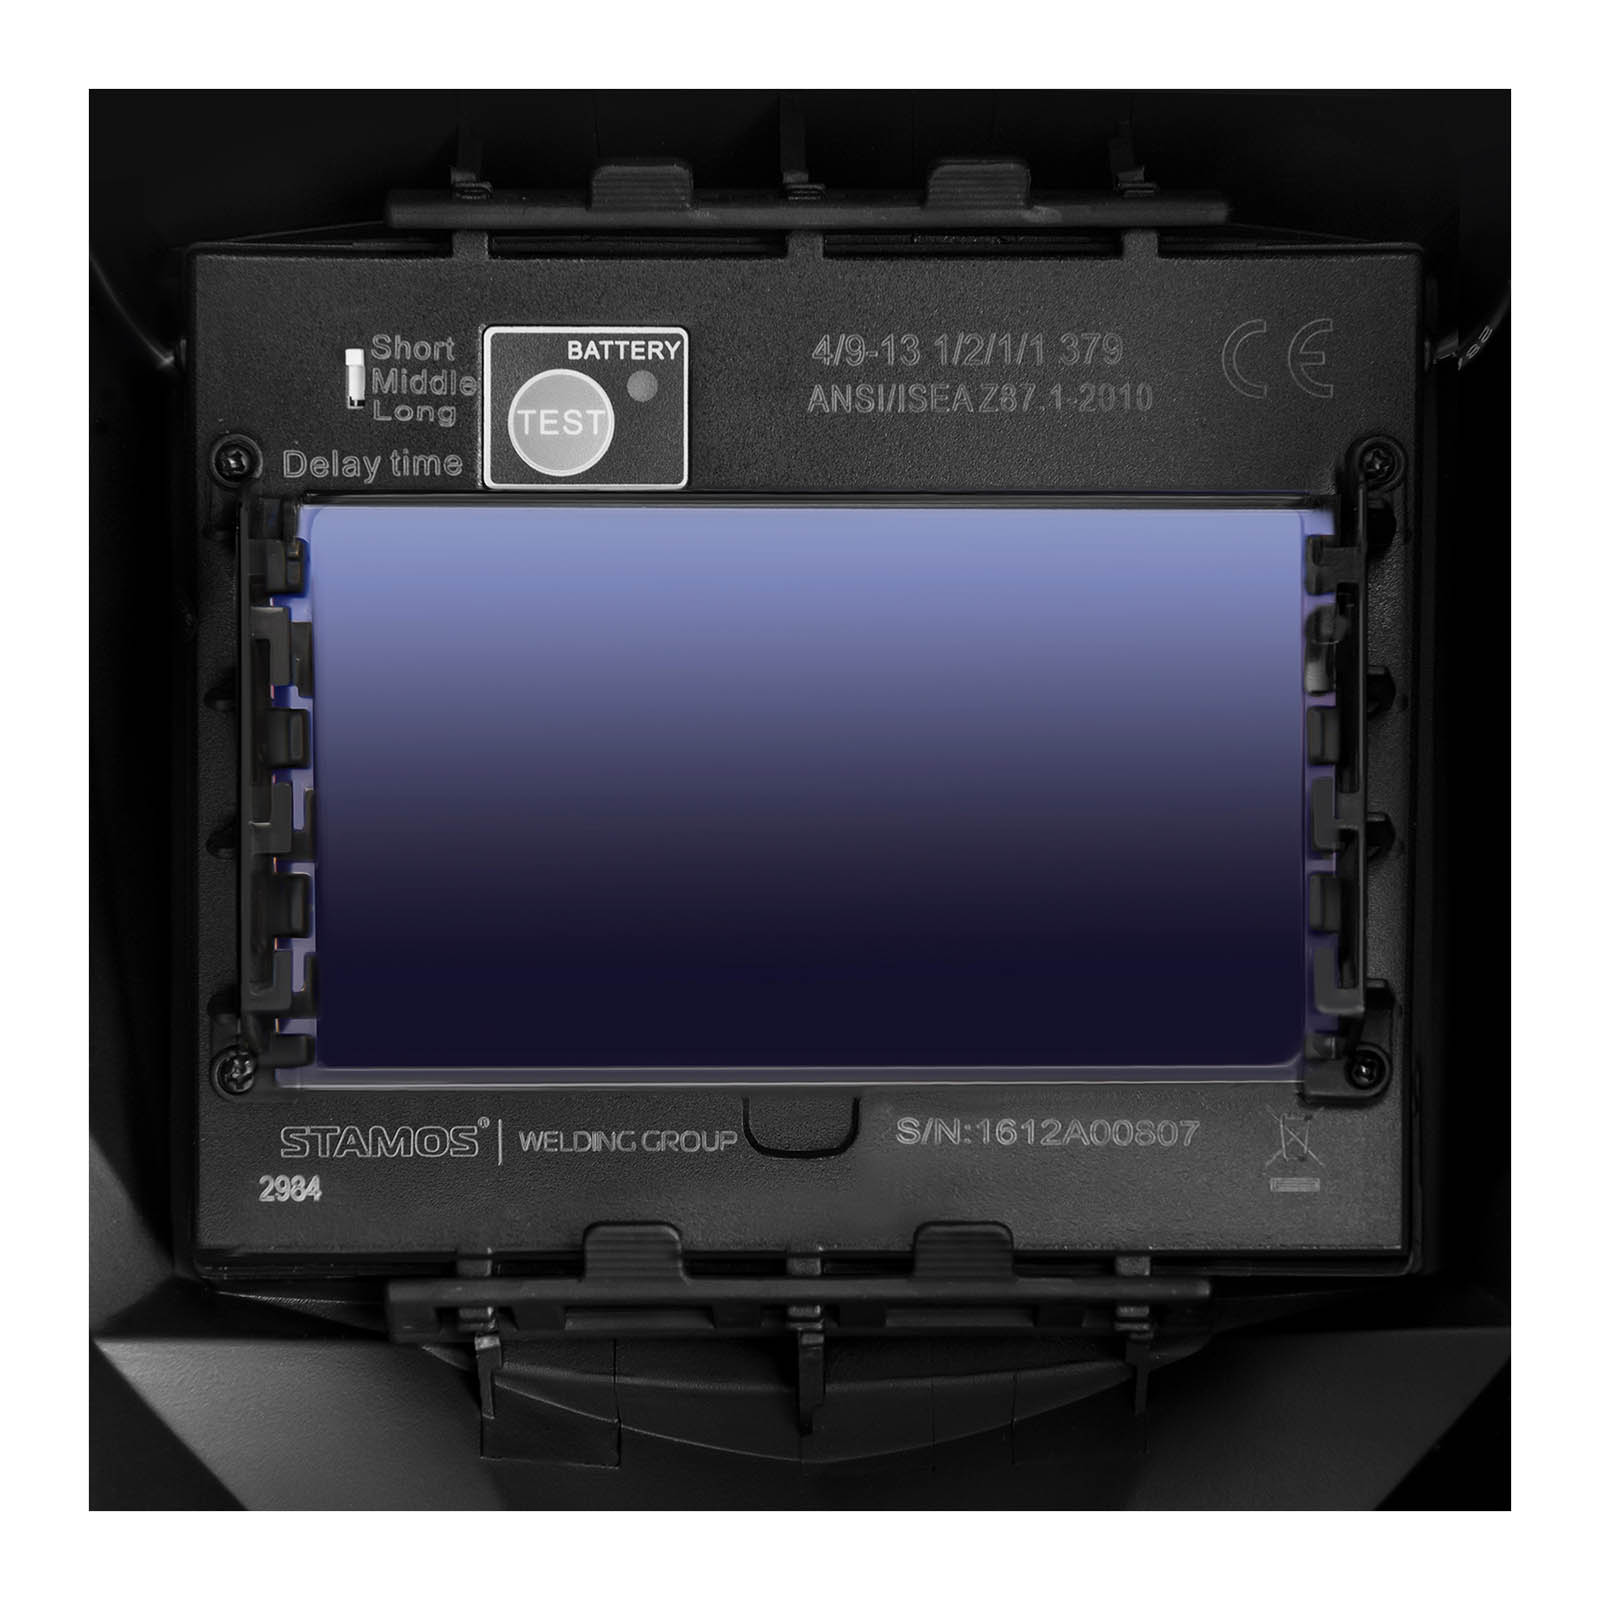 Schweißset MIG/MAG Schweißgerät - 250 A - 230 V - tragbar + Schweißhelm – Firestarter 500